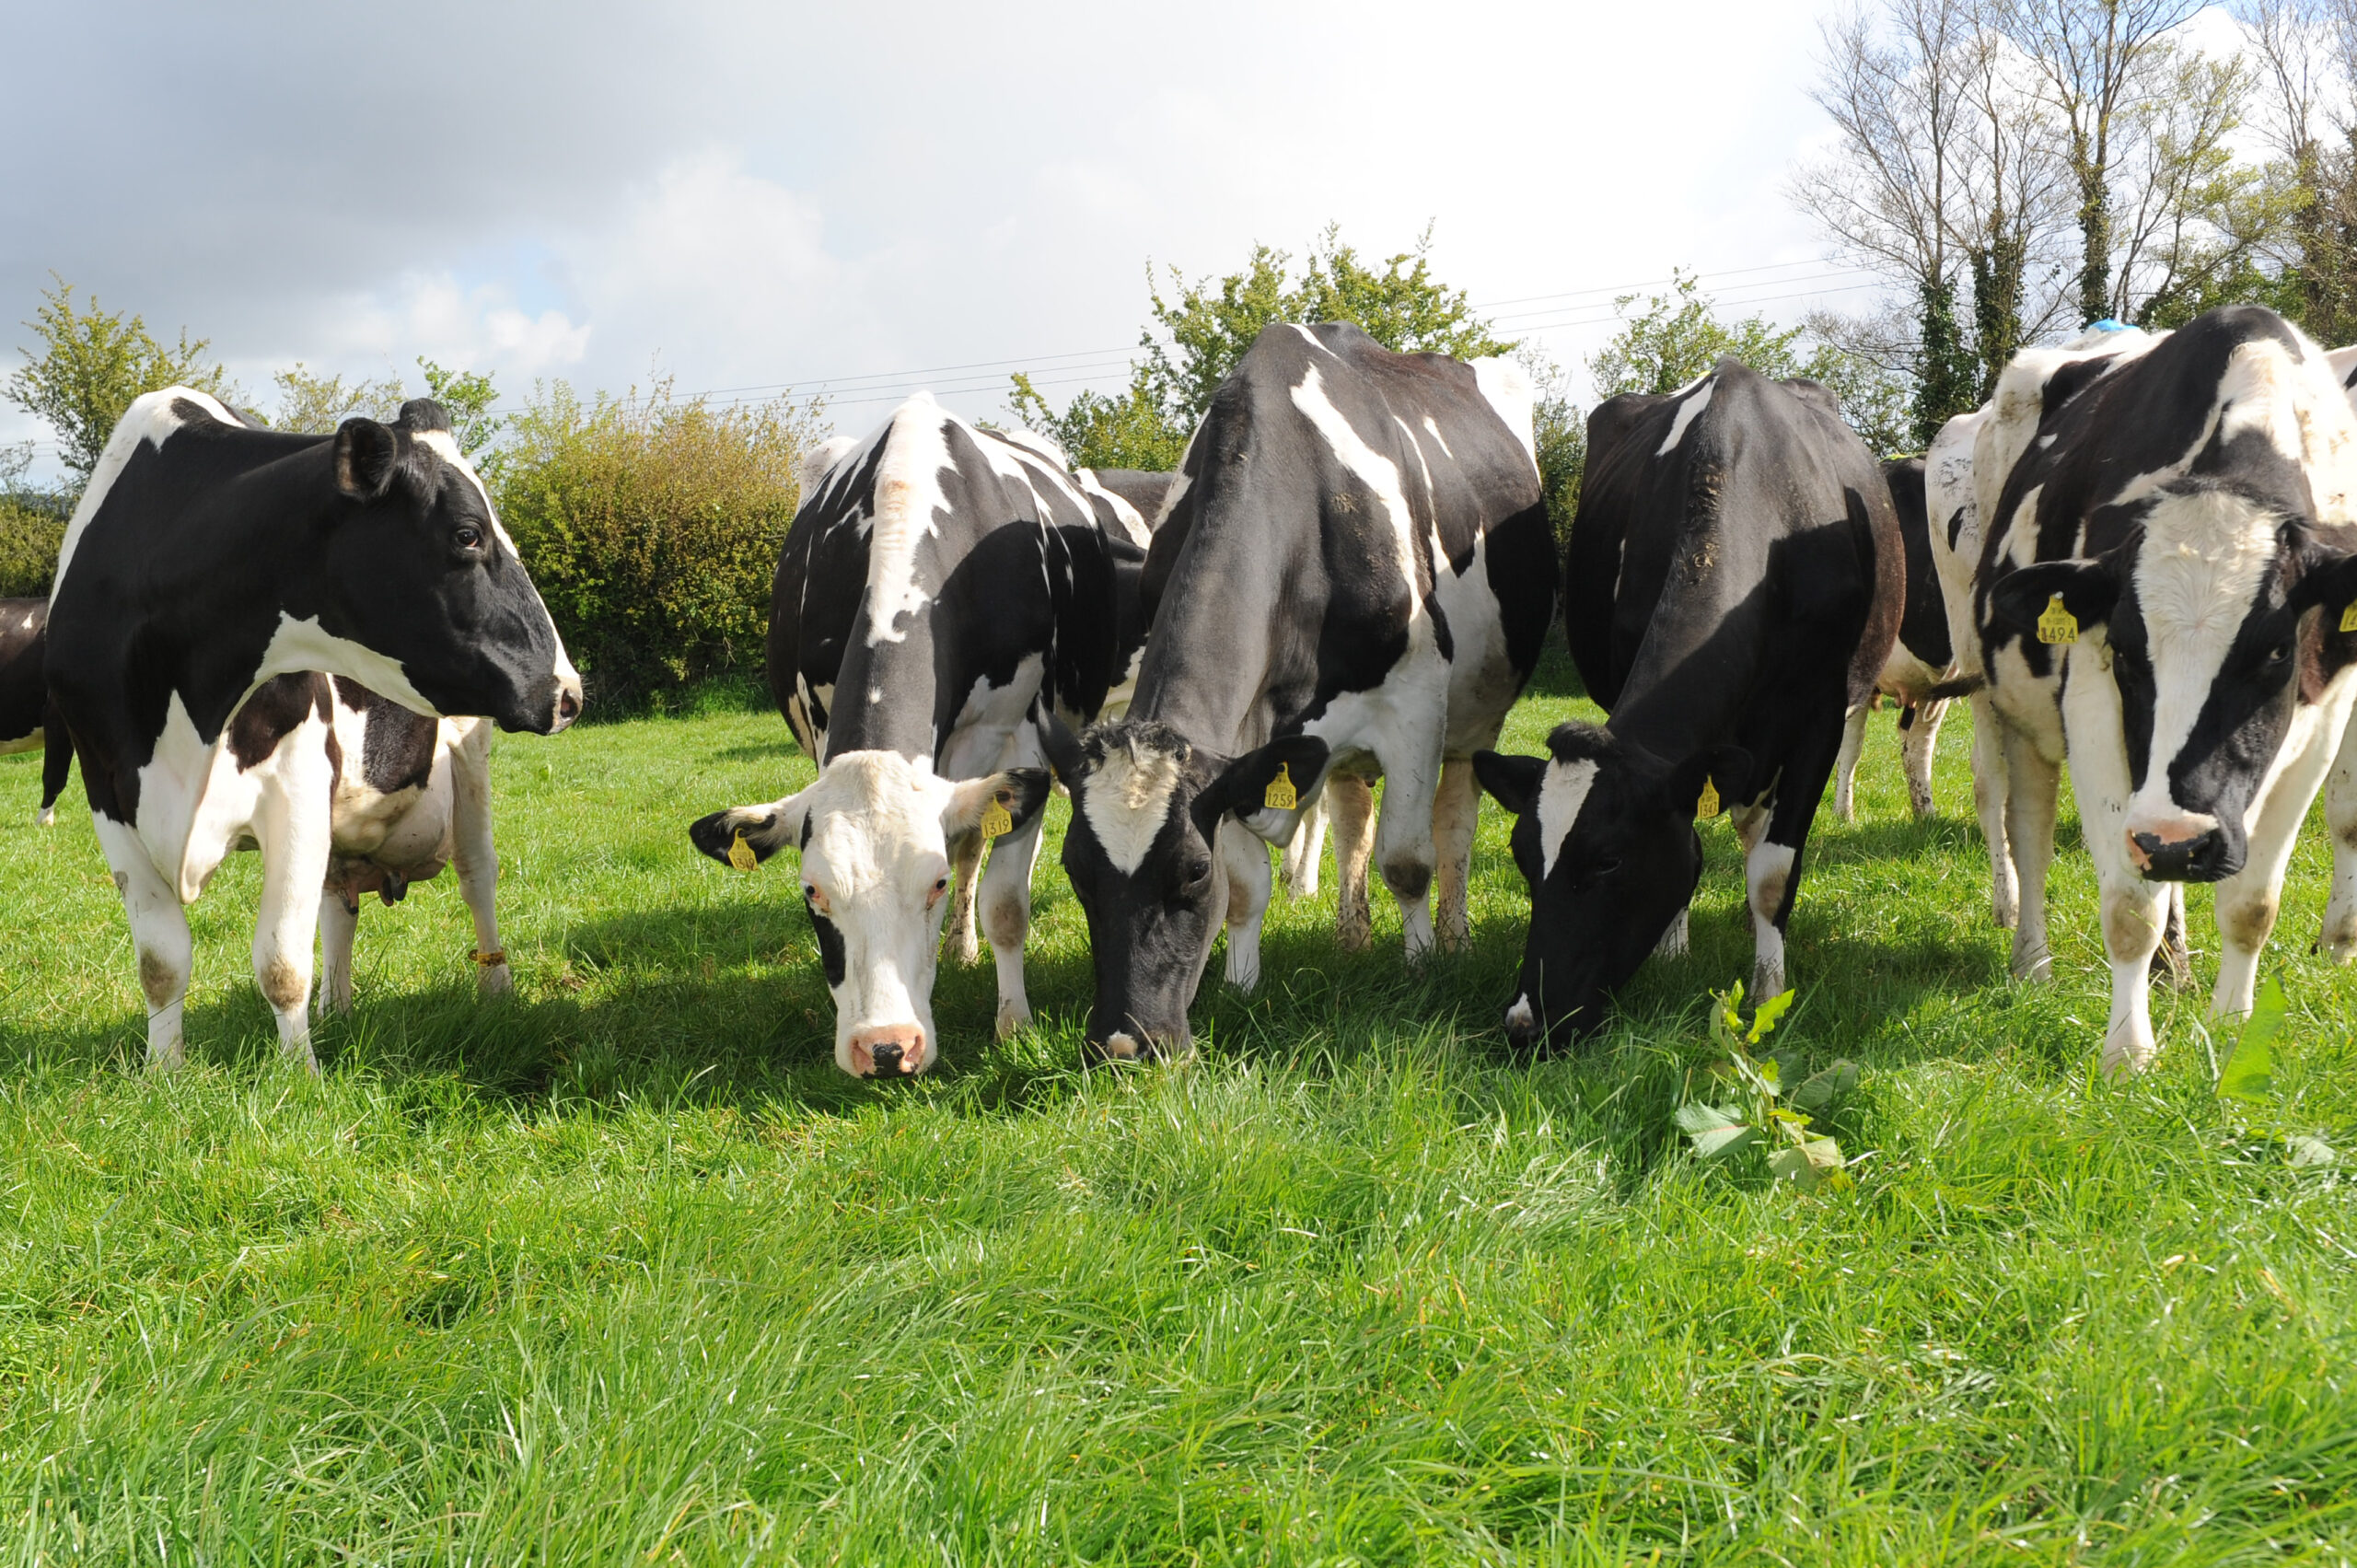 cattle in field grazing